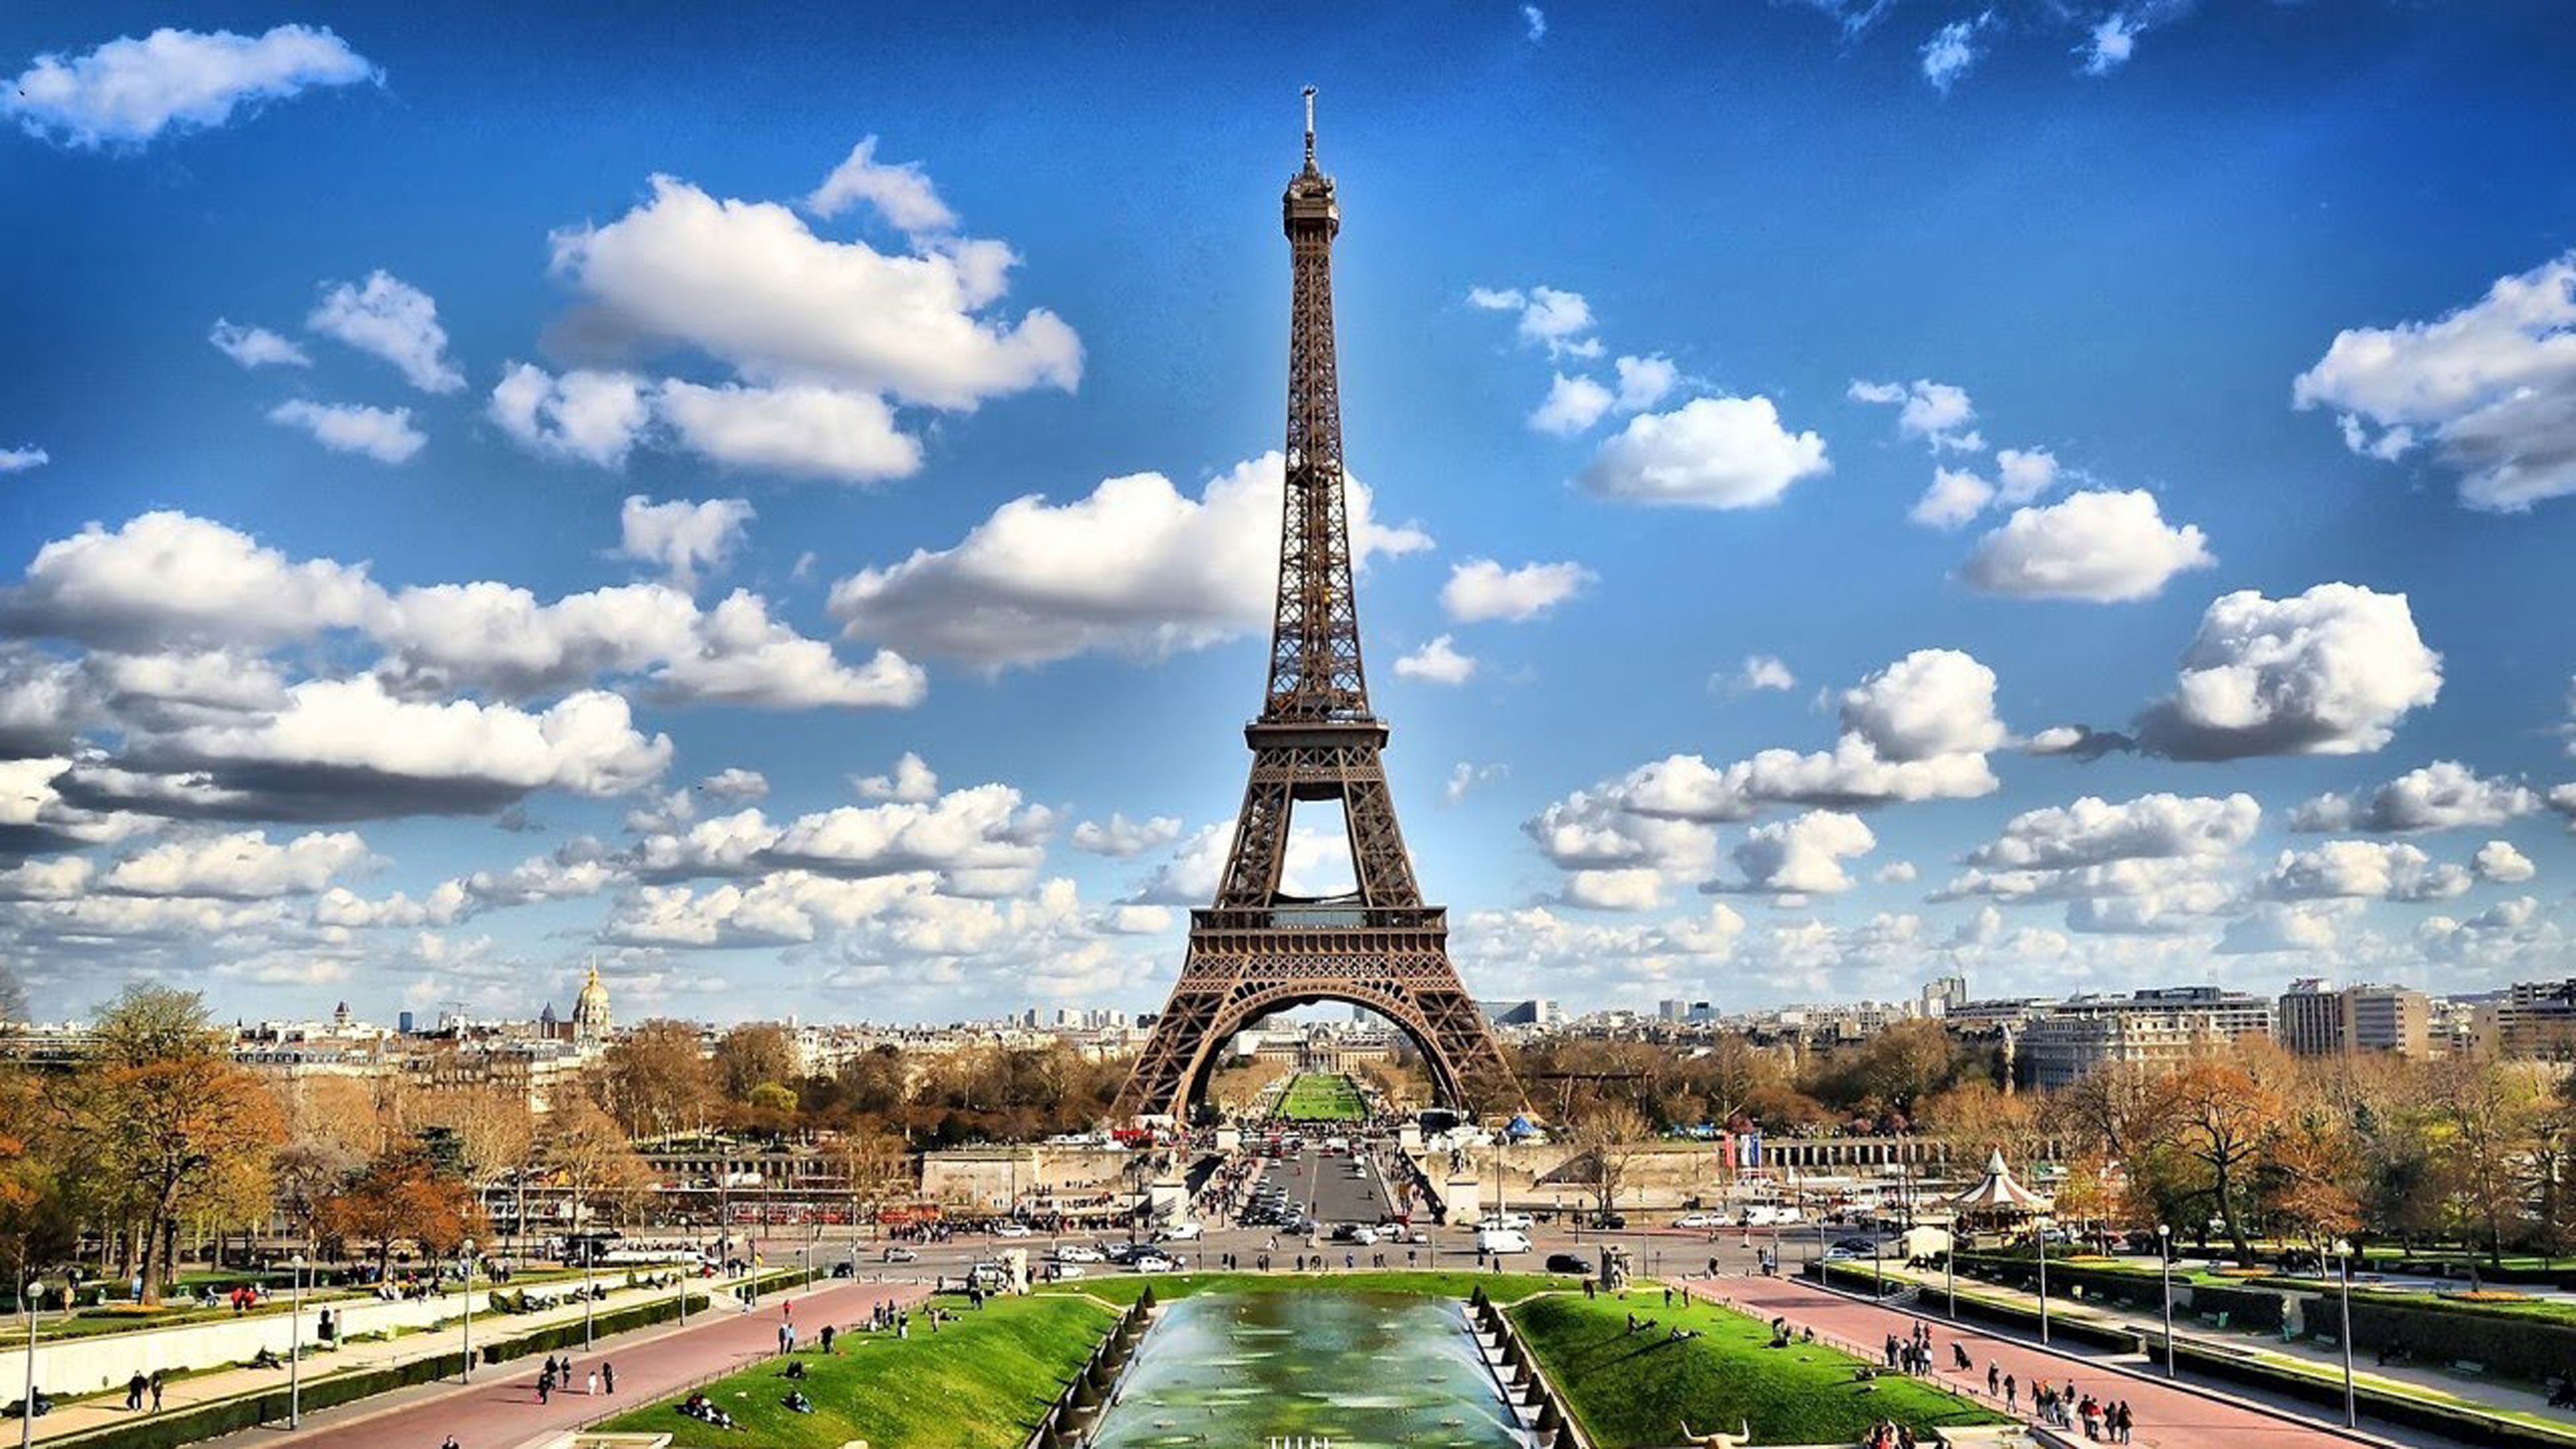 تصویر درخشان برج ایفل در کشور فرانسه برای پست و استوری